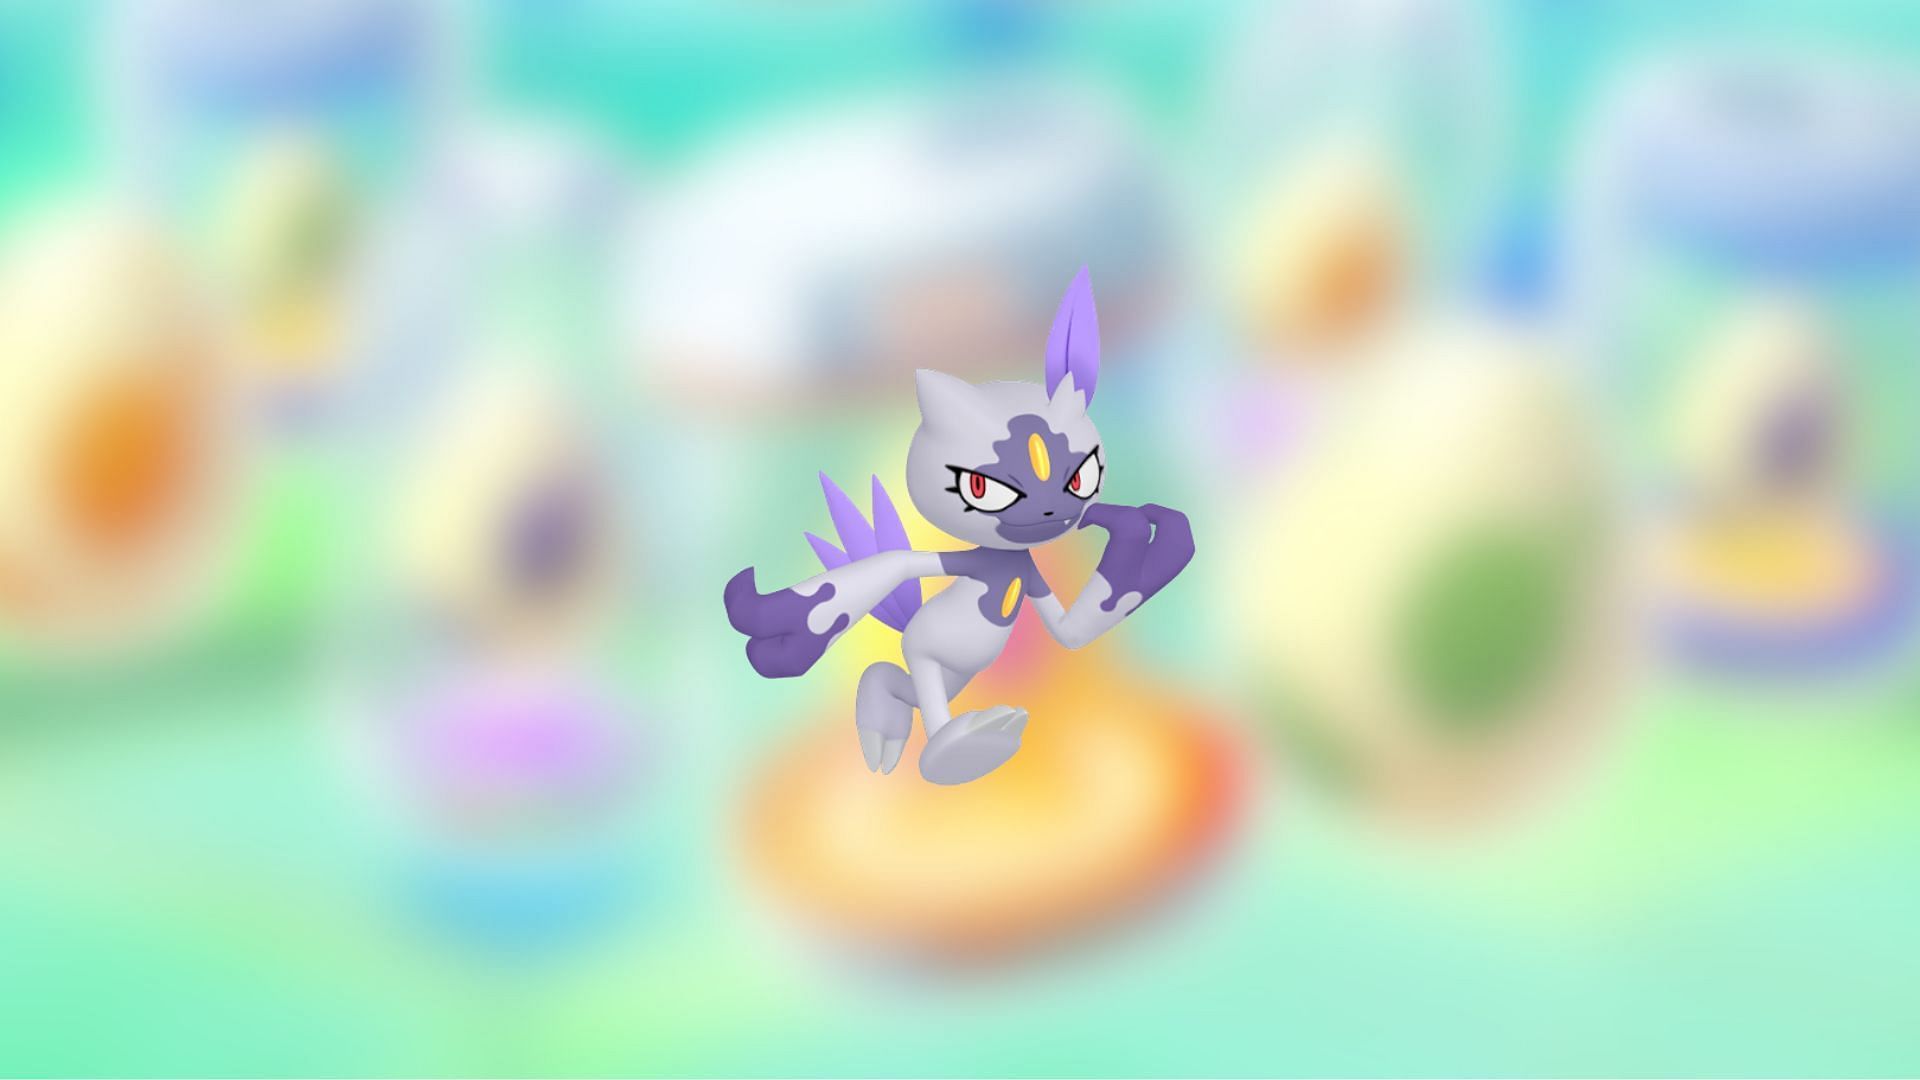 Pokémon GO - Dia de Pesquisa Limitada com Sneasel e mais